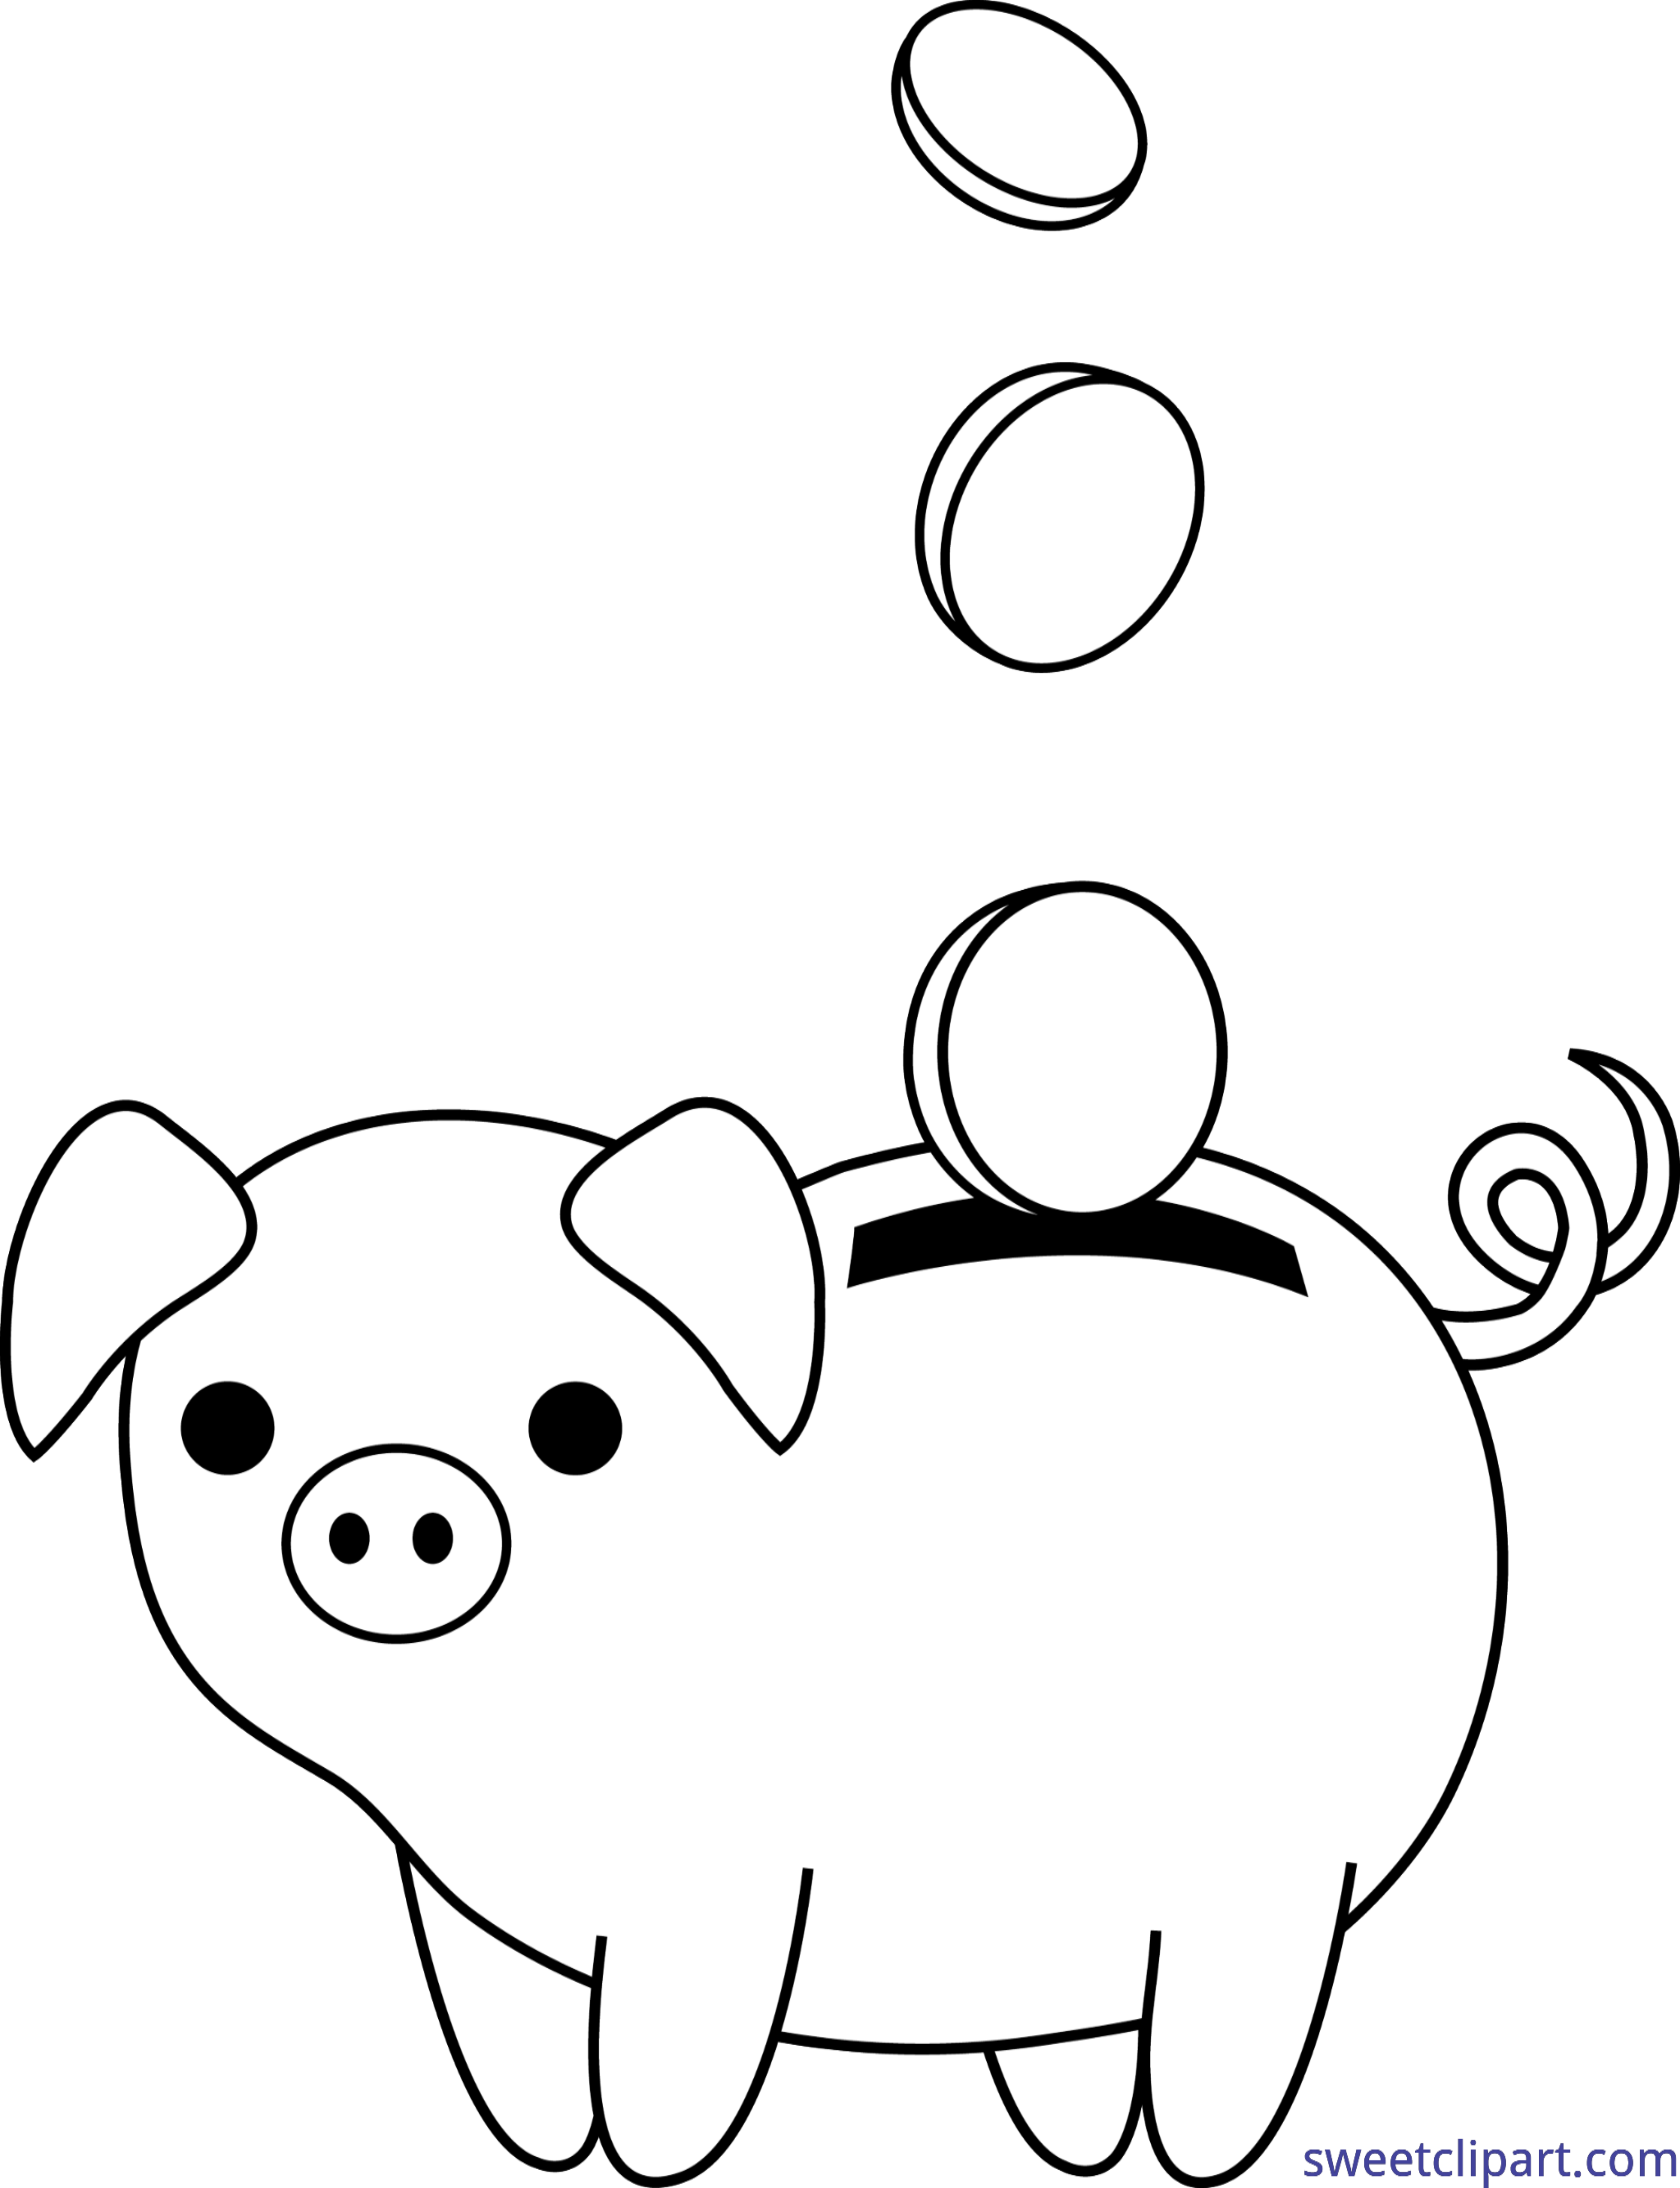 Finance clipart clip art. Piggy bank coins lineart